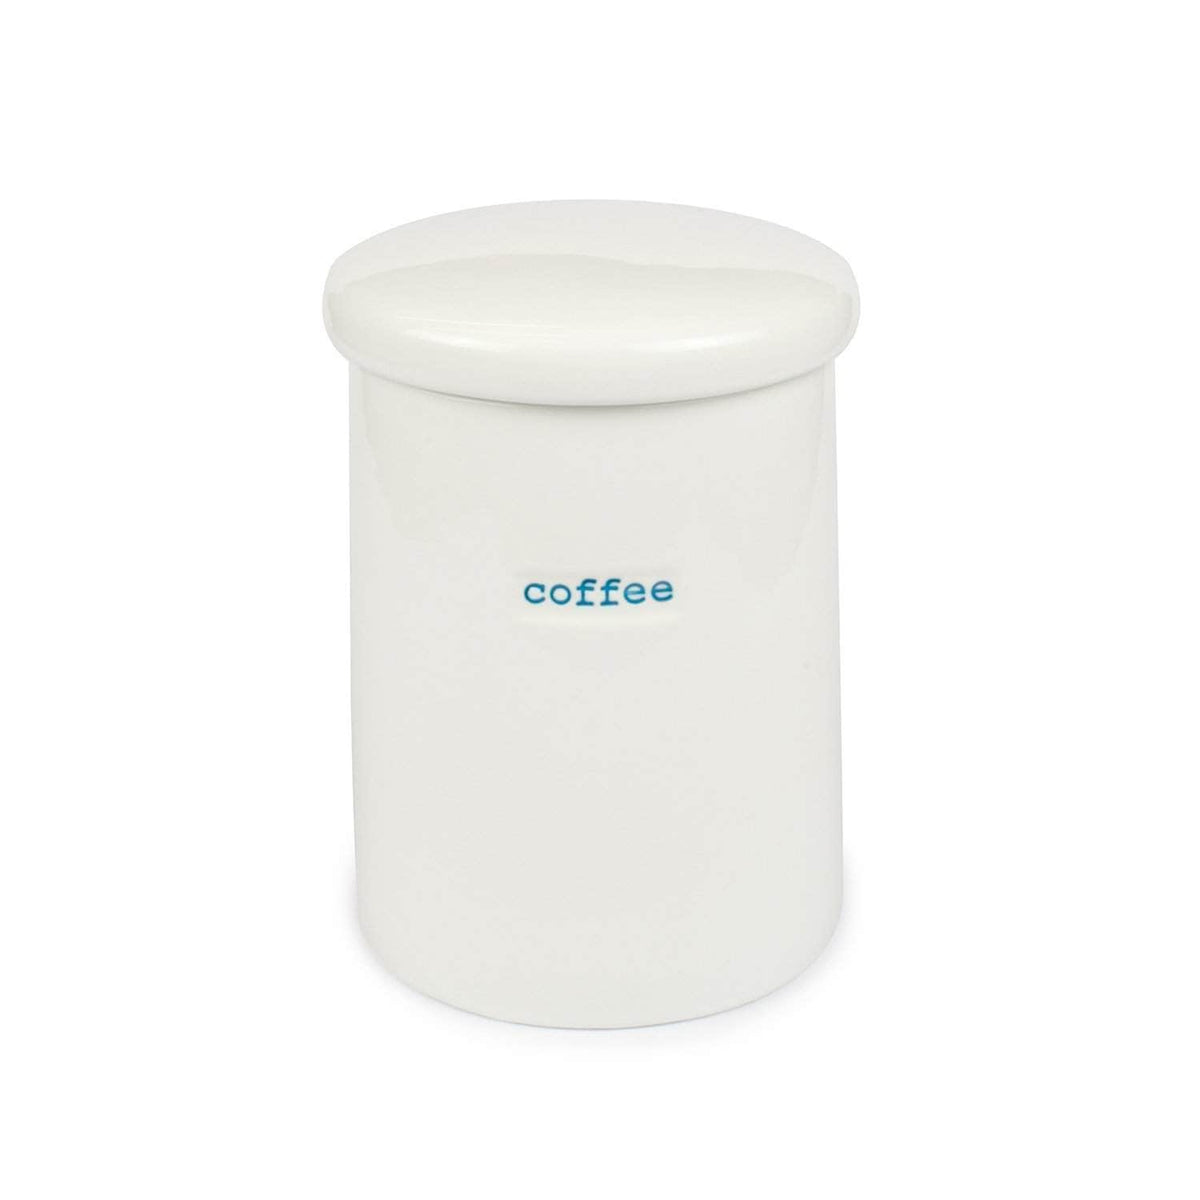 *New* Keith Brymer Jones storage jar: Coffee